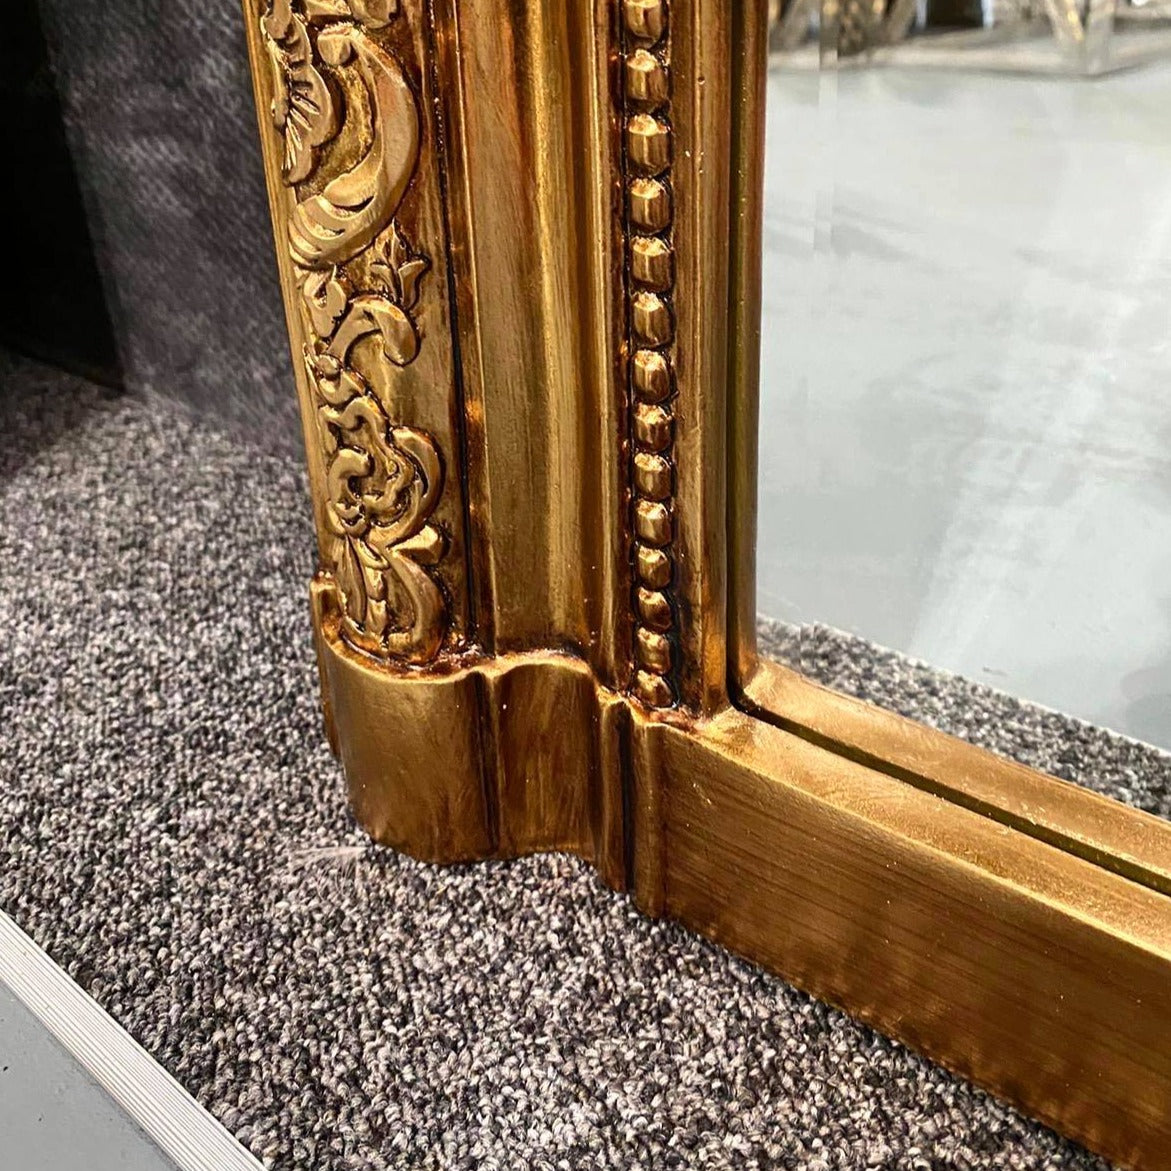 Kensington - Full Length Gold Ornate Mirror 196cm x 100cm